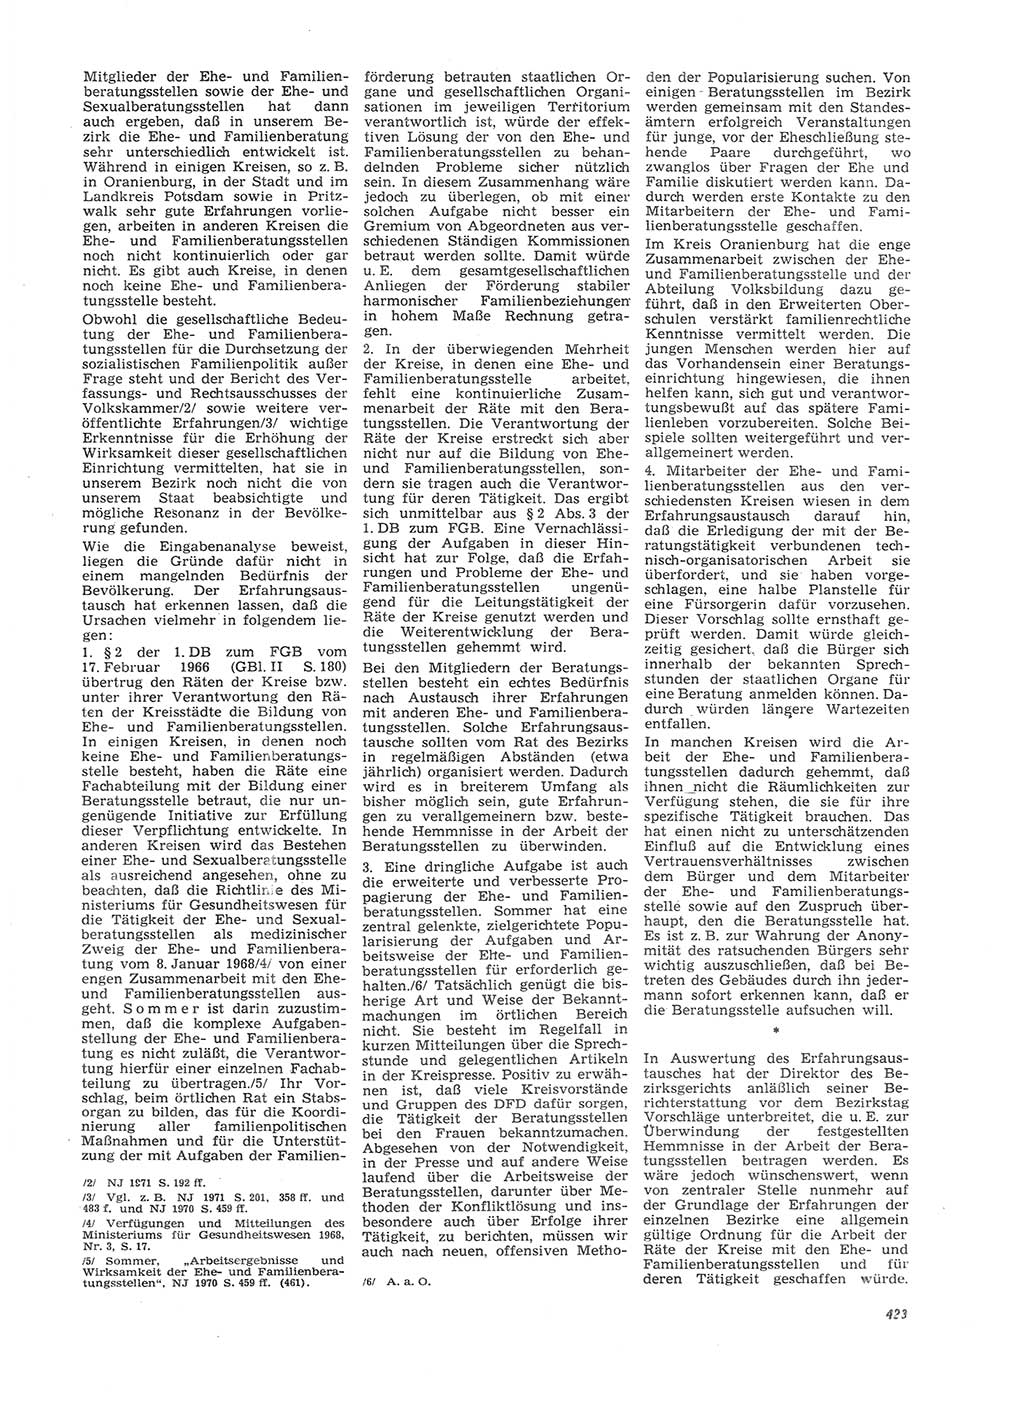 Neue Justiz (NJ), Zeitschrift für Recht und Rechtswissenschaft [Deutsche Demokratische Republik (DDR)], 26. Jahrgang 1972, Seite 423 (NJ DDR 1972, S. 423)